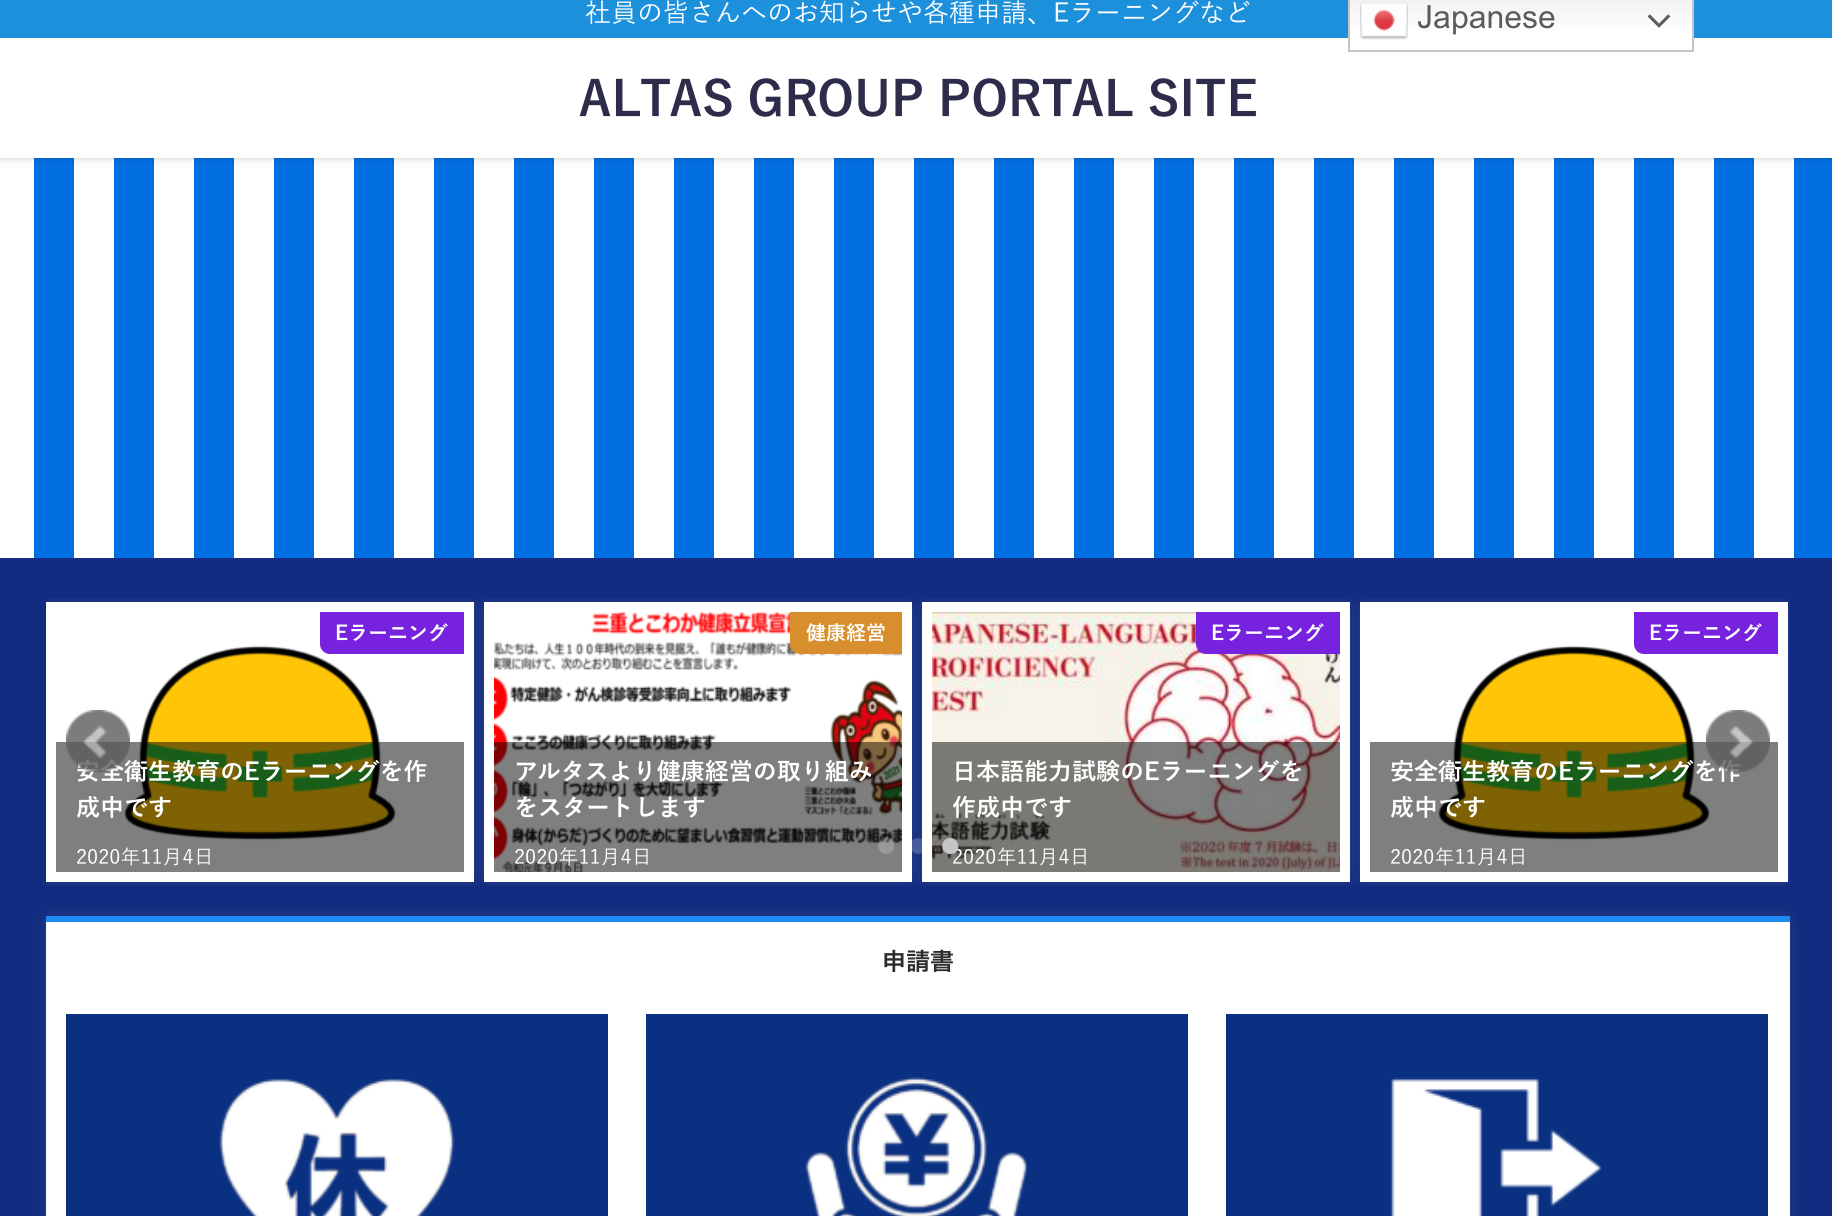 アルタスグループポータルサイトの運用をスタートしています